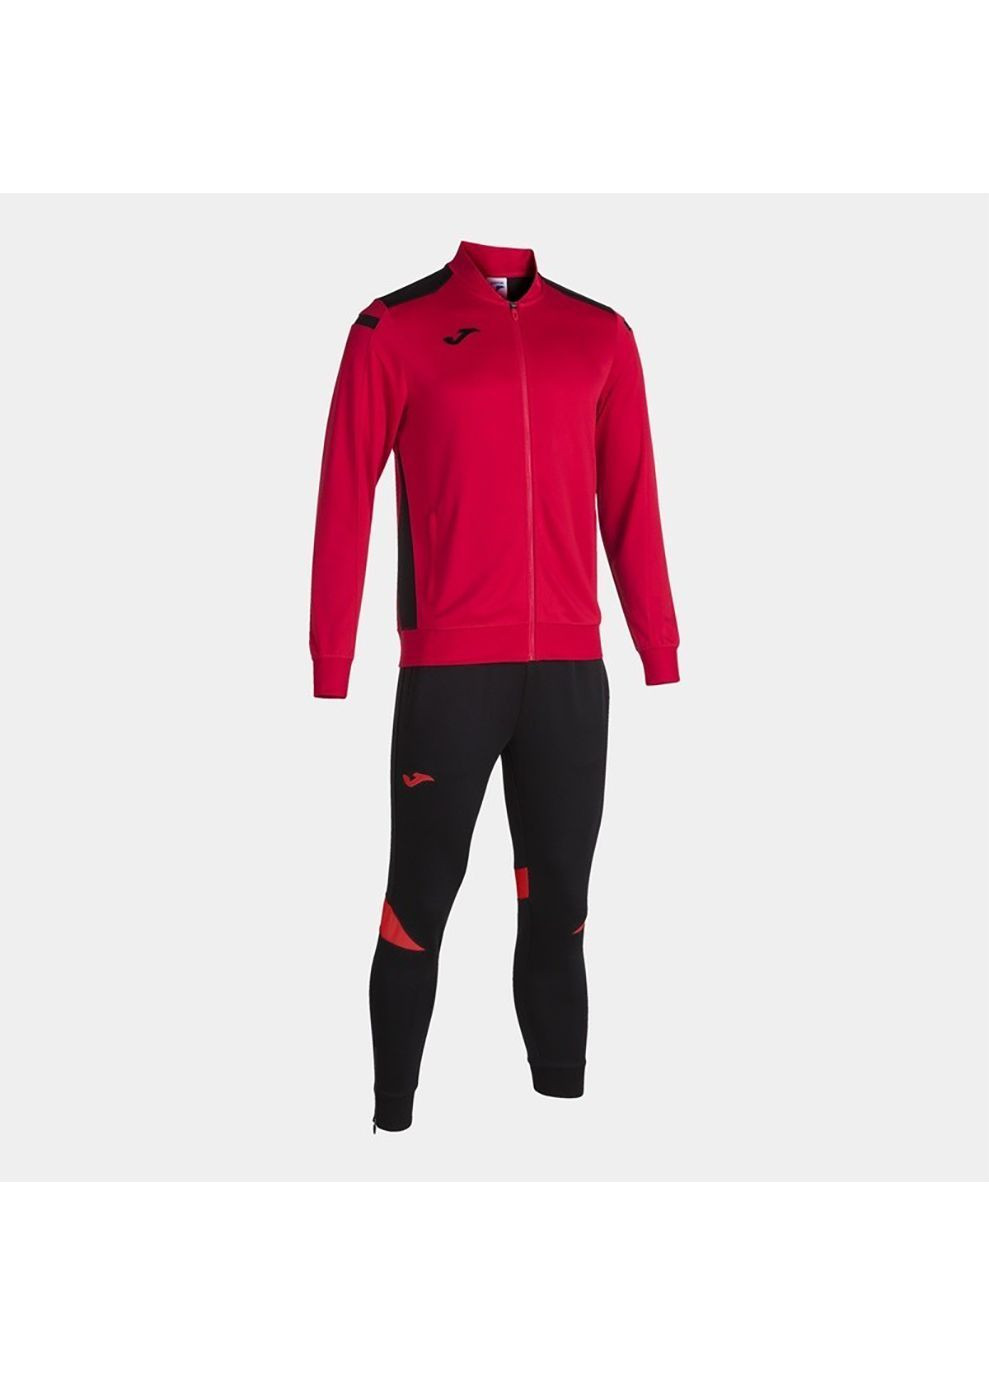 Спортивный костюм CHAMPION VI красный,черный Joma (282616510)